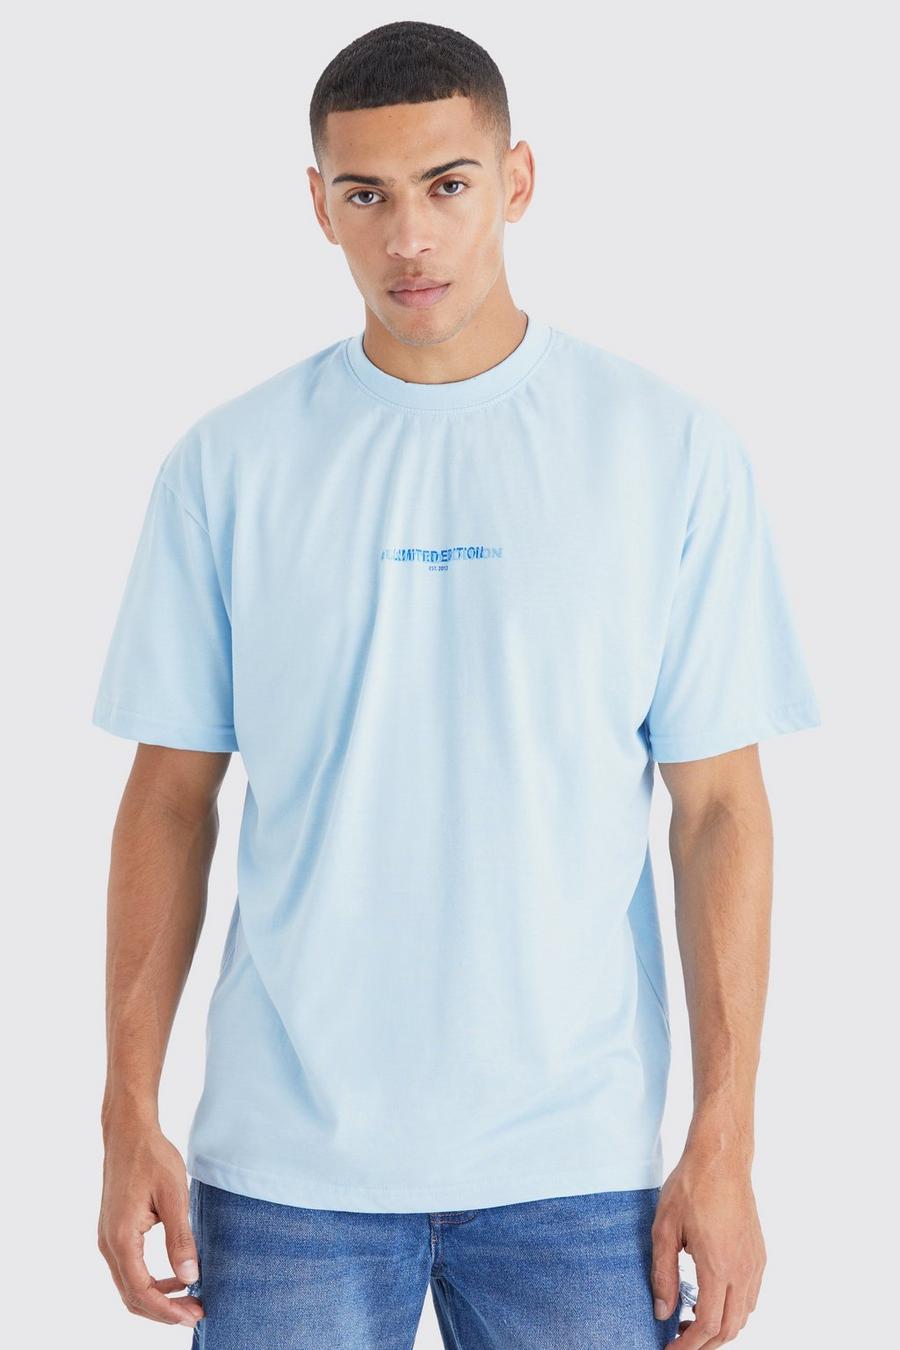 Camiseta oversize gruesa Limited Edition, Light blue azzurro